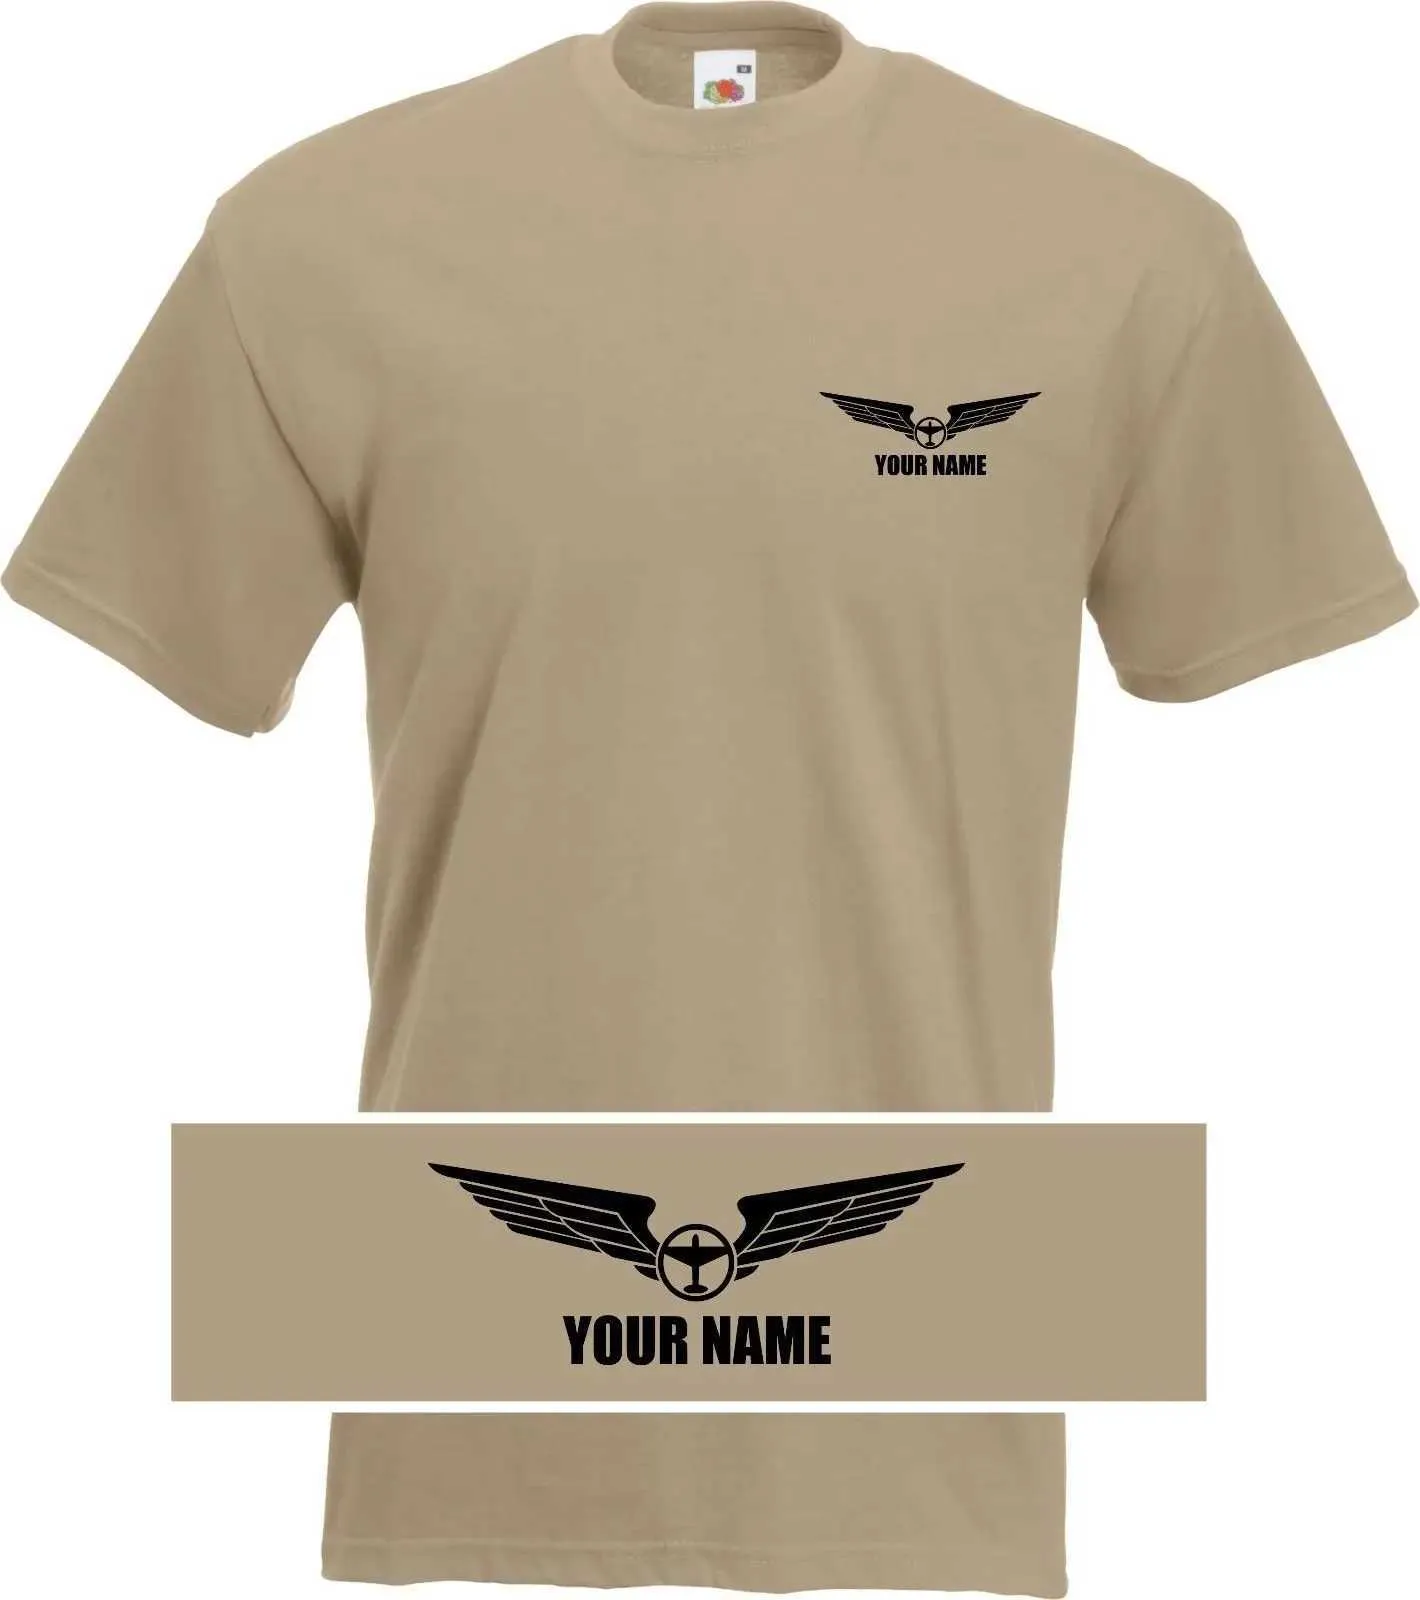 T-shirty męskie spersonalizowane lot do samolotów pilotów dostosowywane T-shirt 2019 Męskie projektowanie dorosłych Casual Fit T-shirt J240228